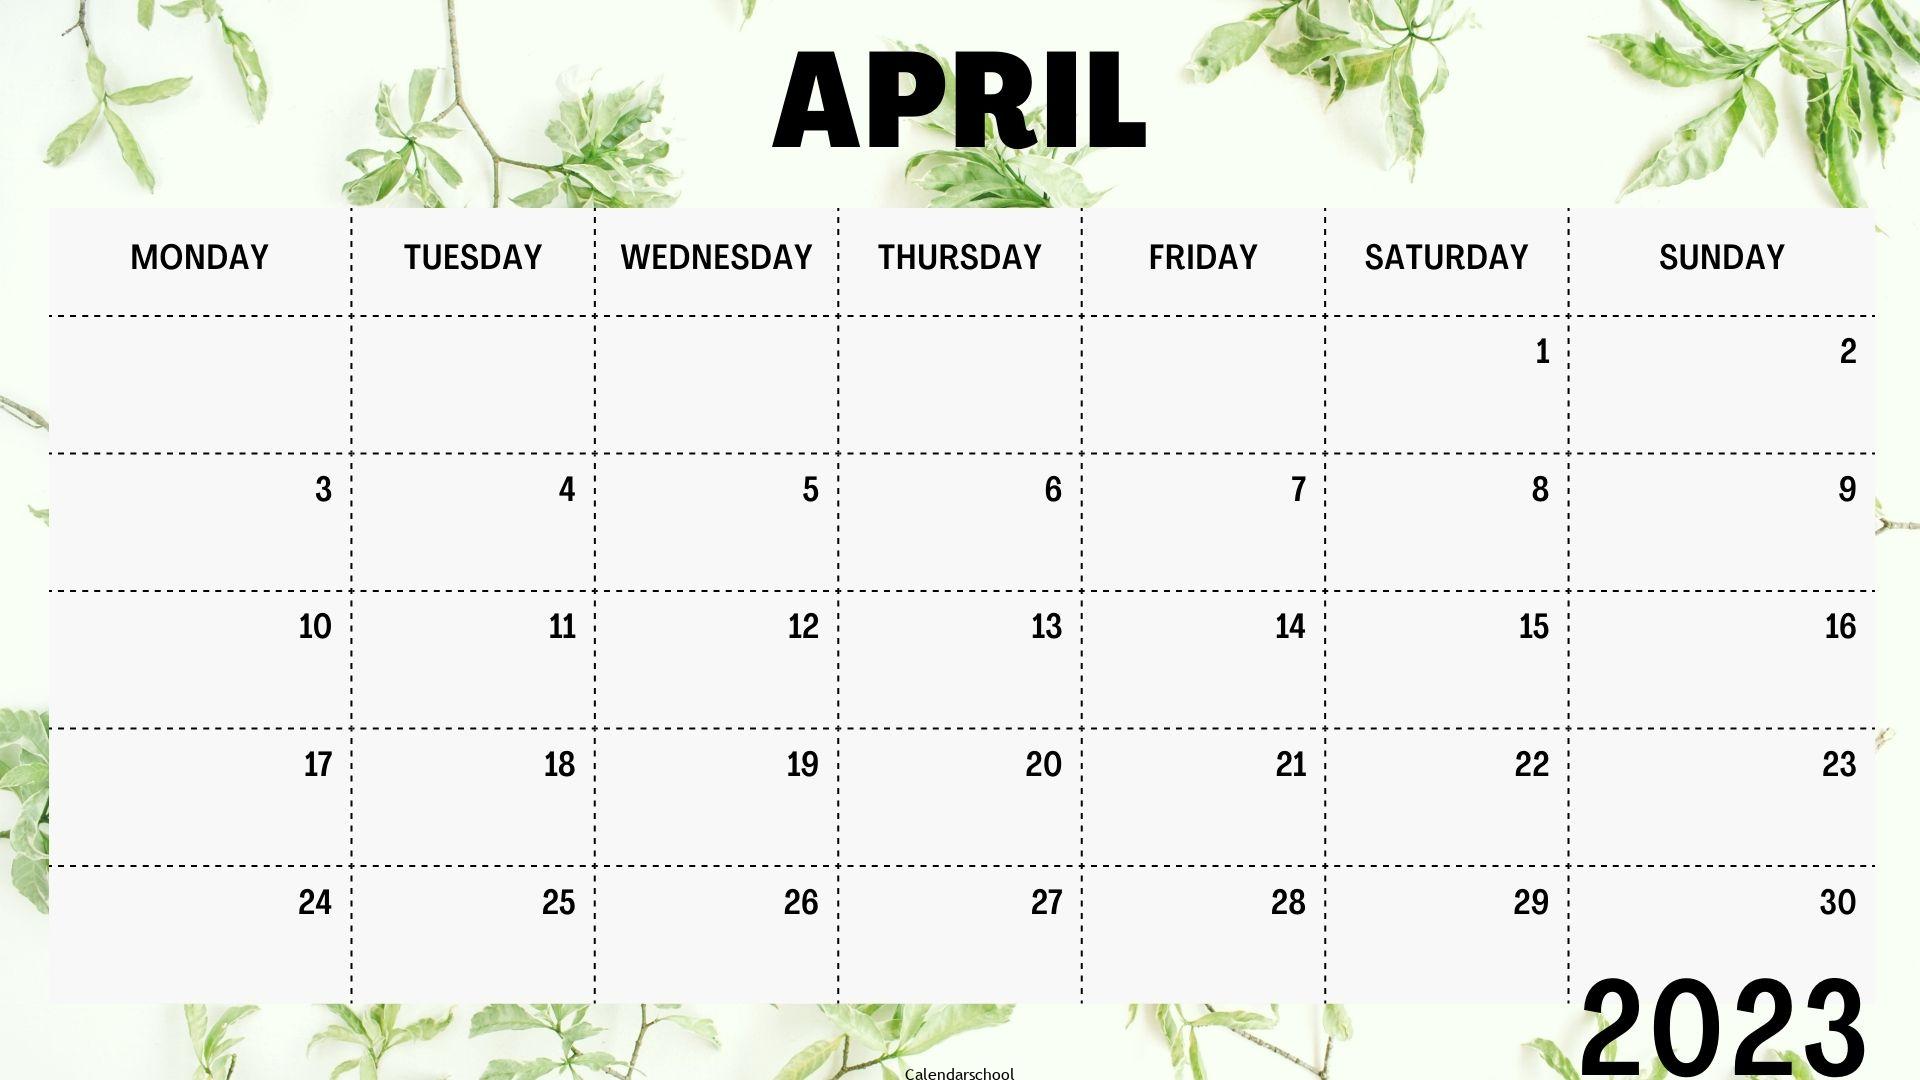 April Calendar 2023 UK